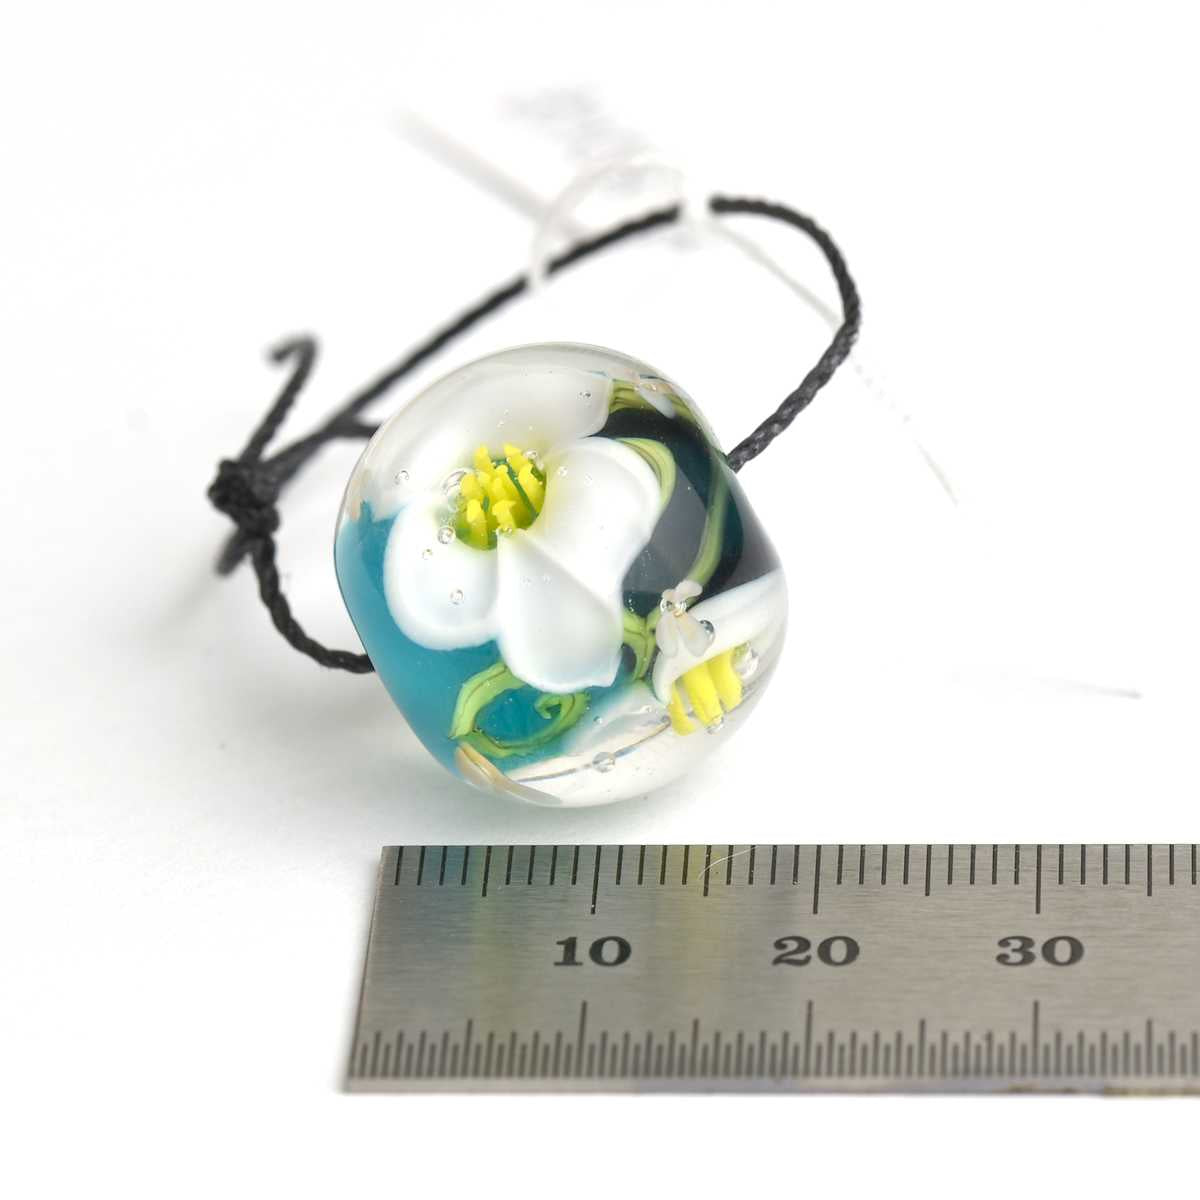 Perle de verre fleurs blanches avec pistils jaunes  🖤 Fabrication française 🖤